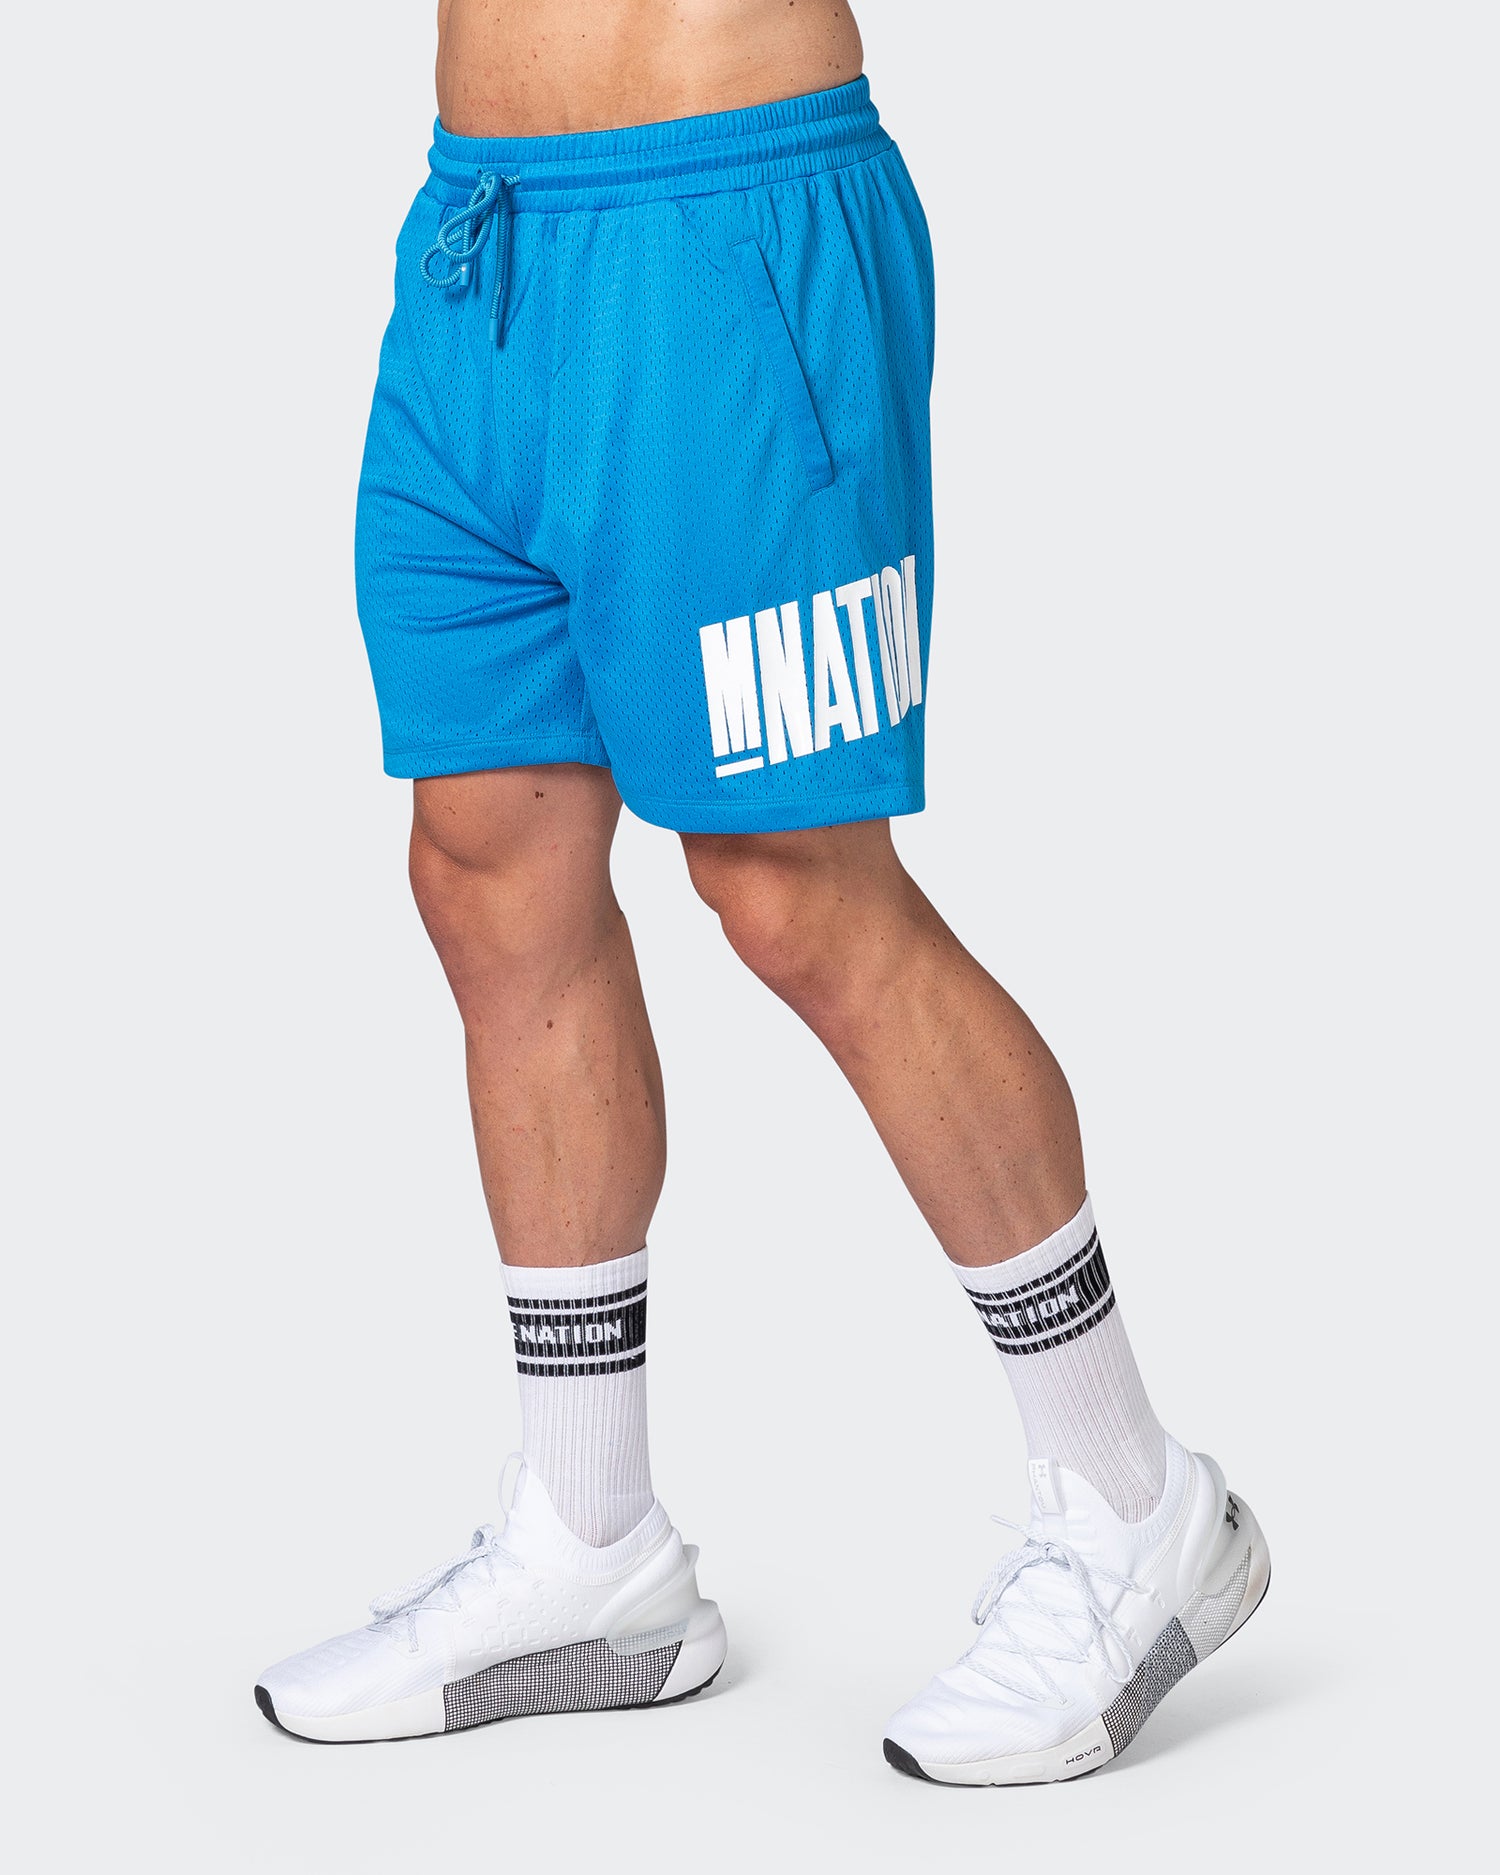 Free Throw Lifestyle Shorts - Malibu